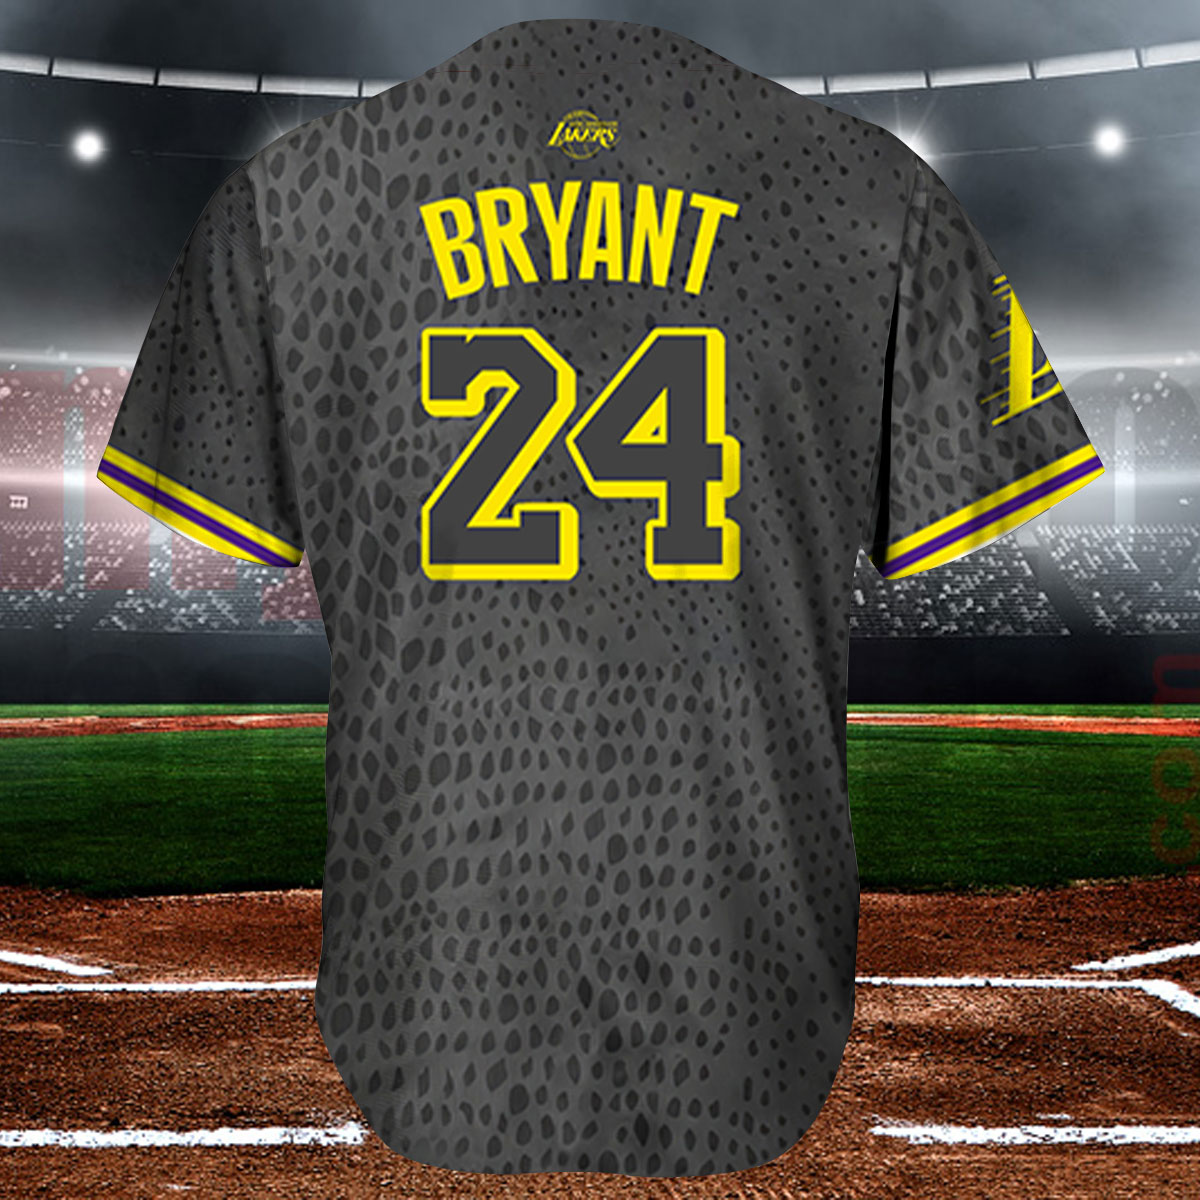 Kobe Bryant Baseball Jersey Shirt Black Mamba Kobe Bryant Jersey